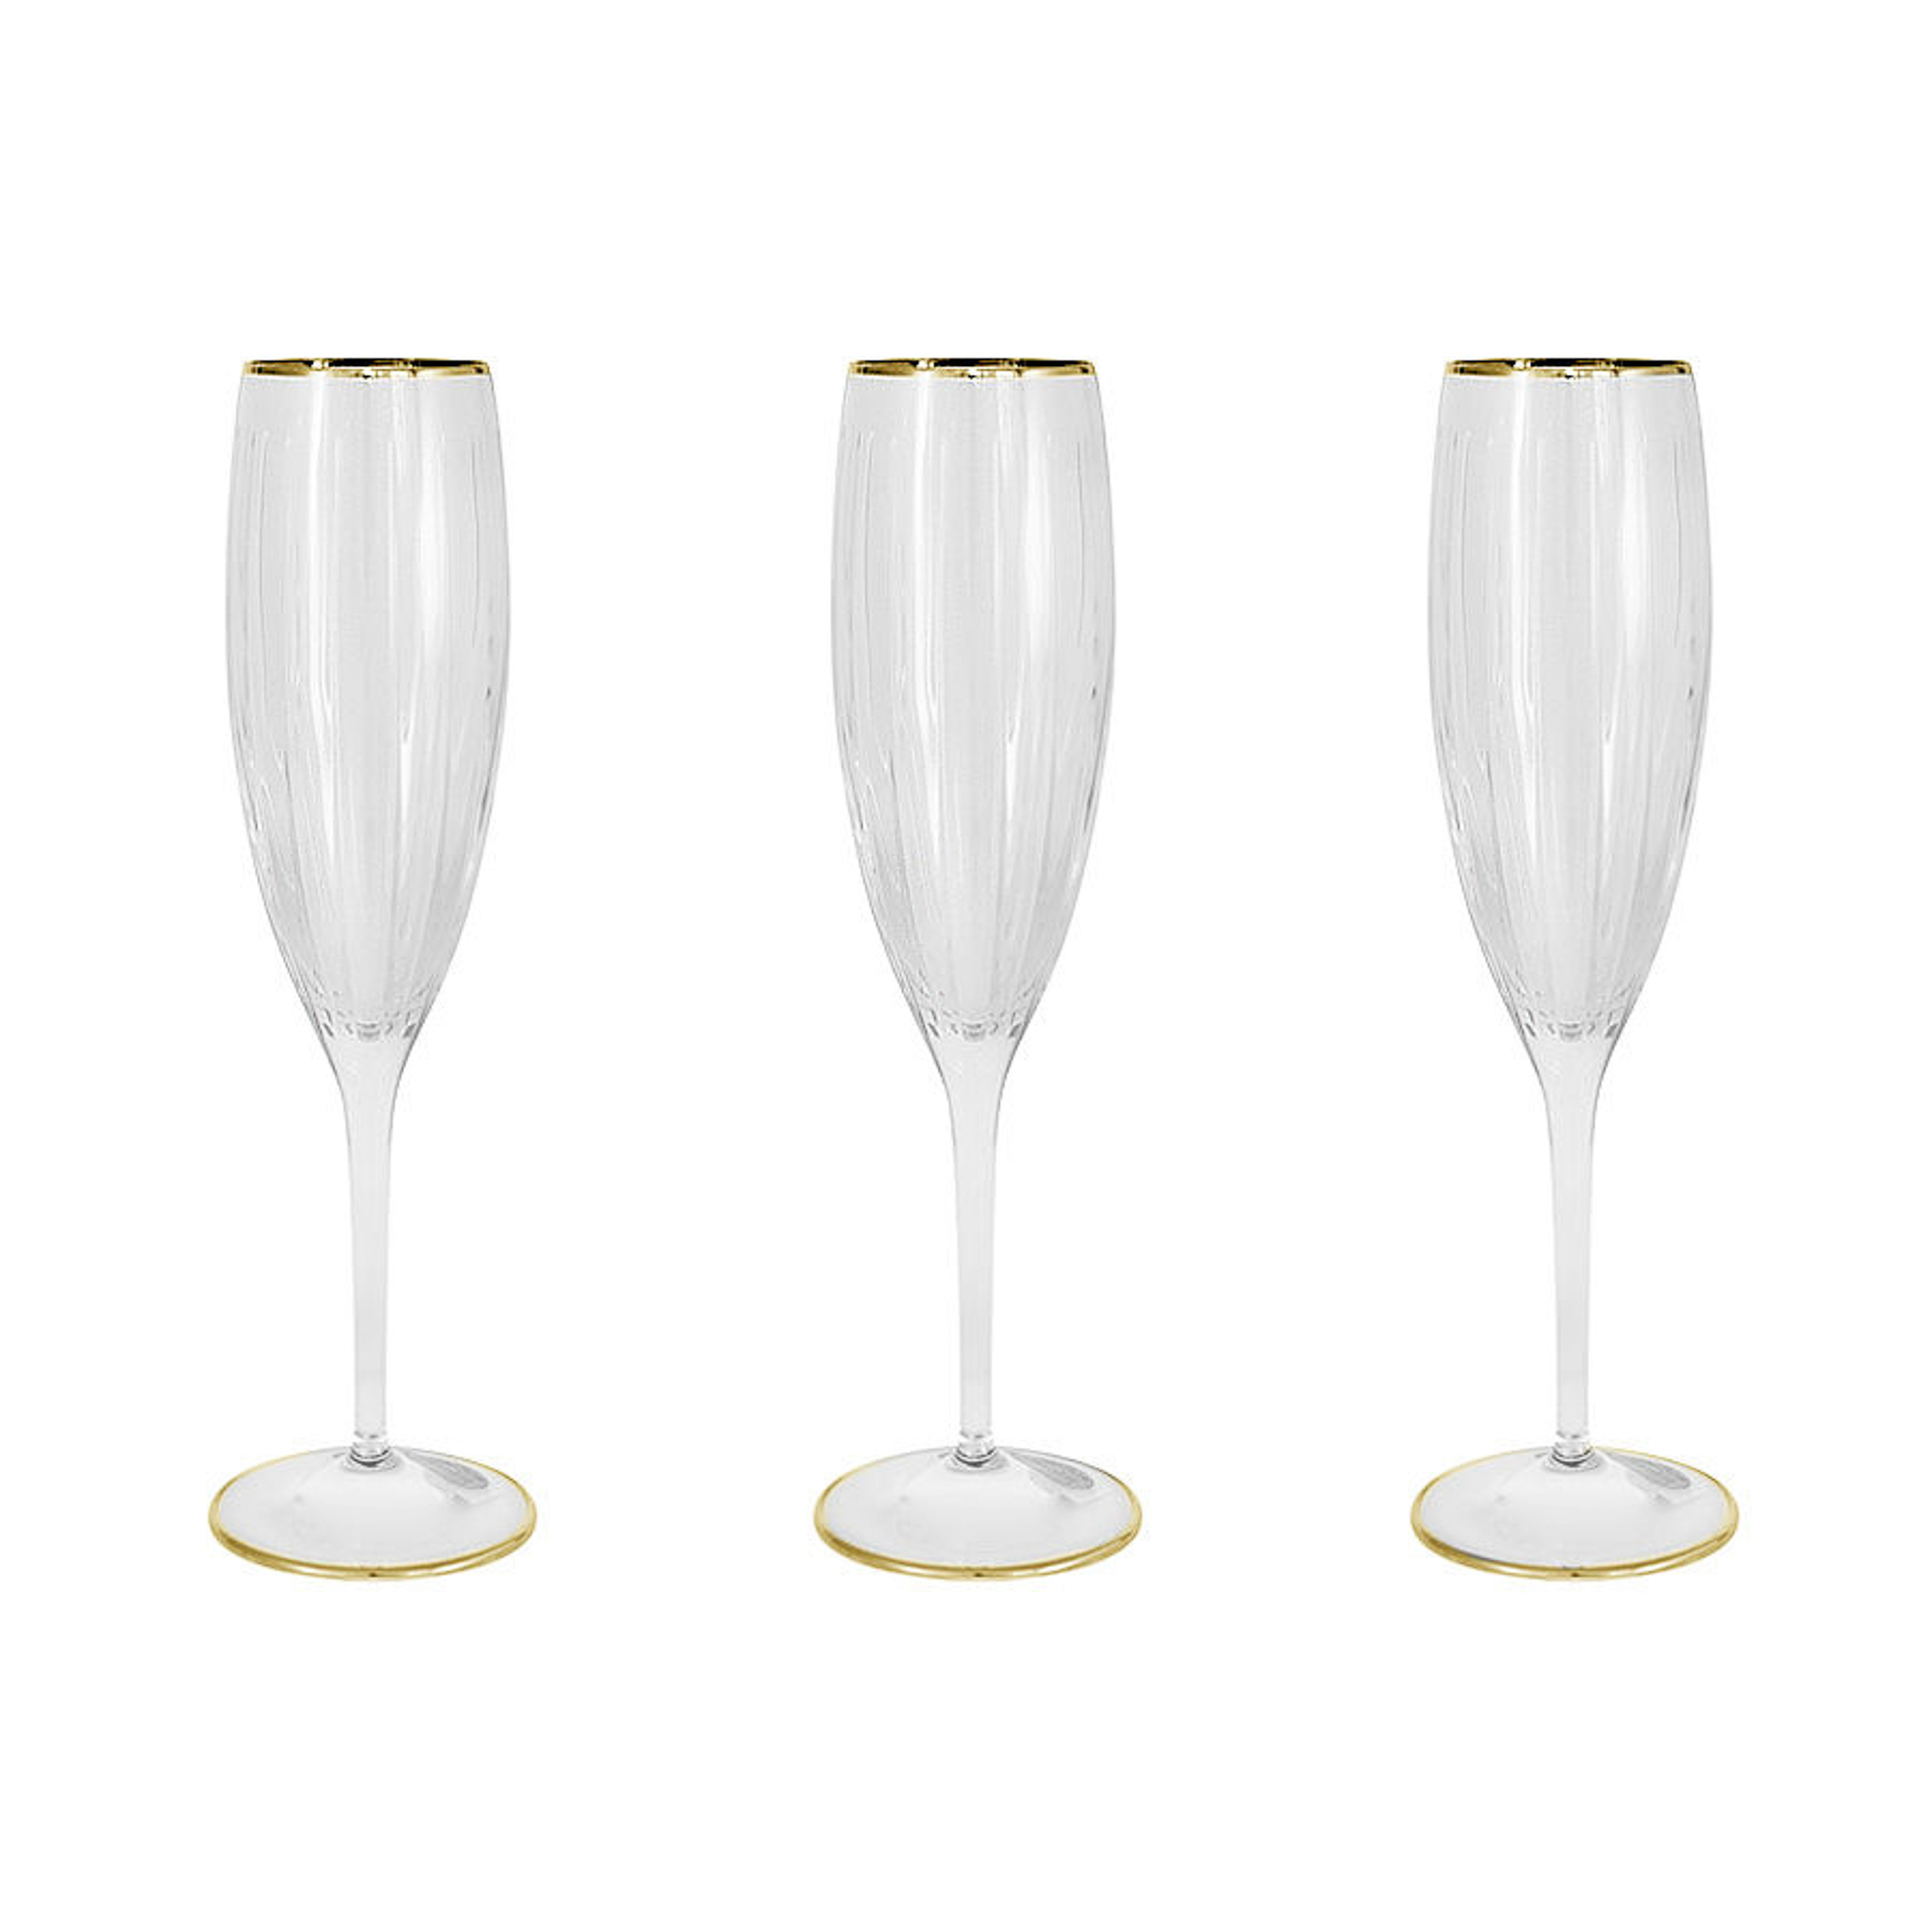 Набор фужеров Same Пиза золото для шампанского 150 мл 6 шт набор фужеров для шампанского cristal de paris мирей 150 мл 6 шт хрусталь ассорти